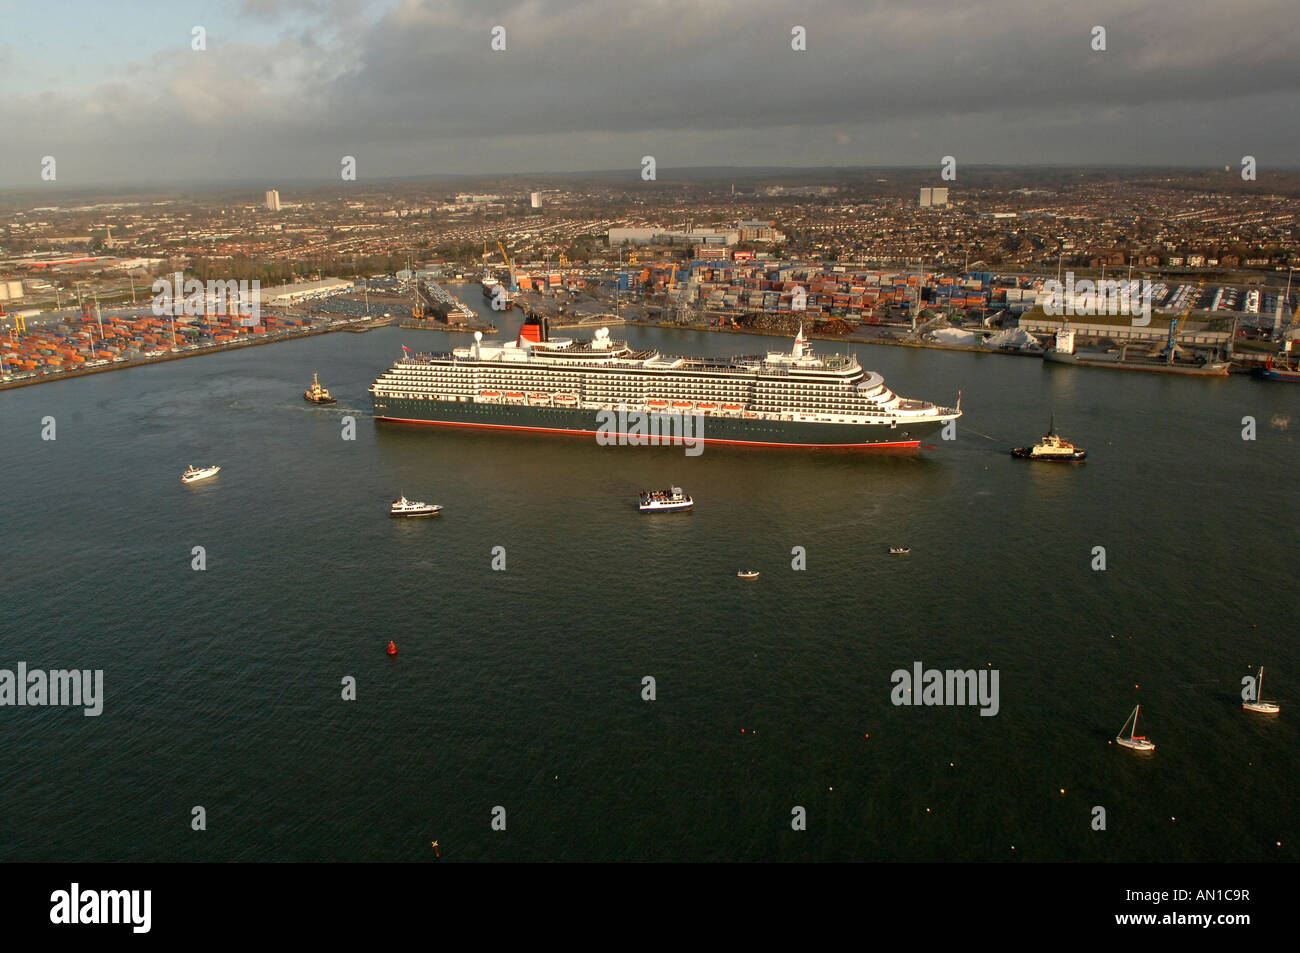 Ajout récent à Cunards flotte de paquebots luxueux la reine victoria entrant dans les eaux de Southampton au Royaume-Uni. Banque D'Images